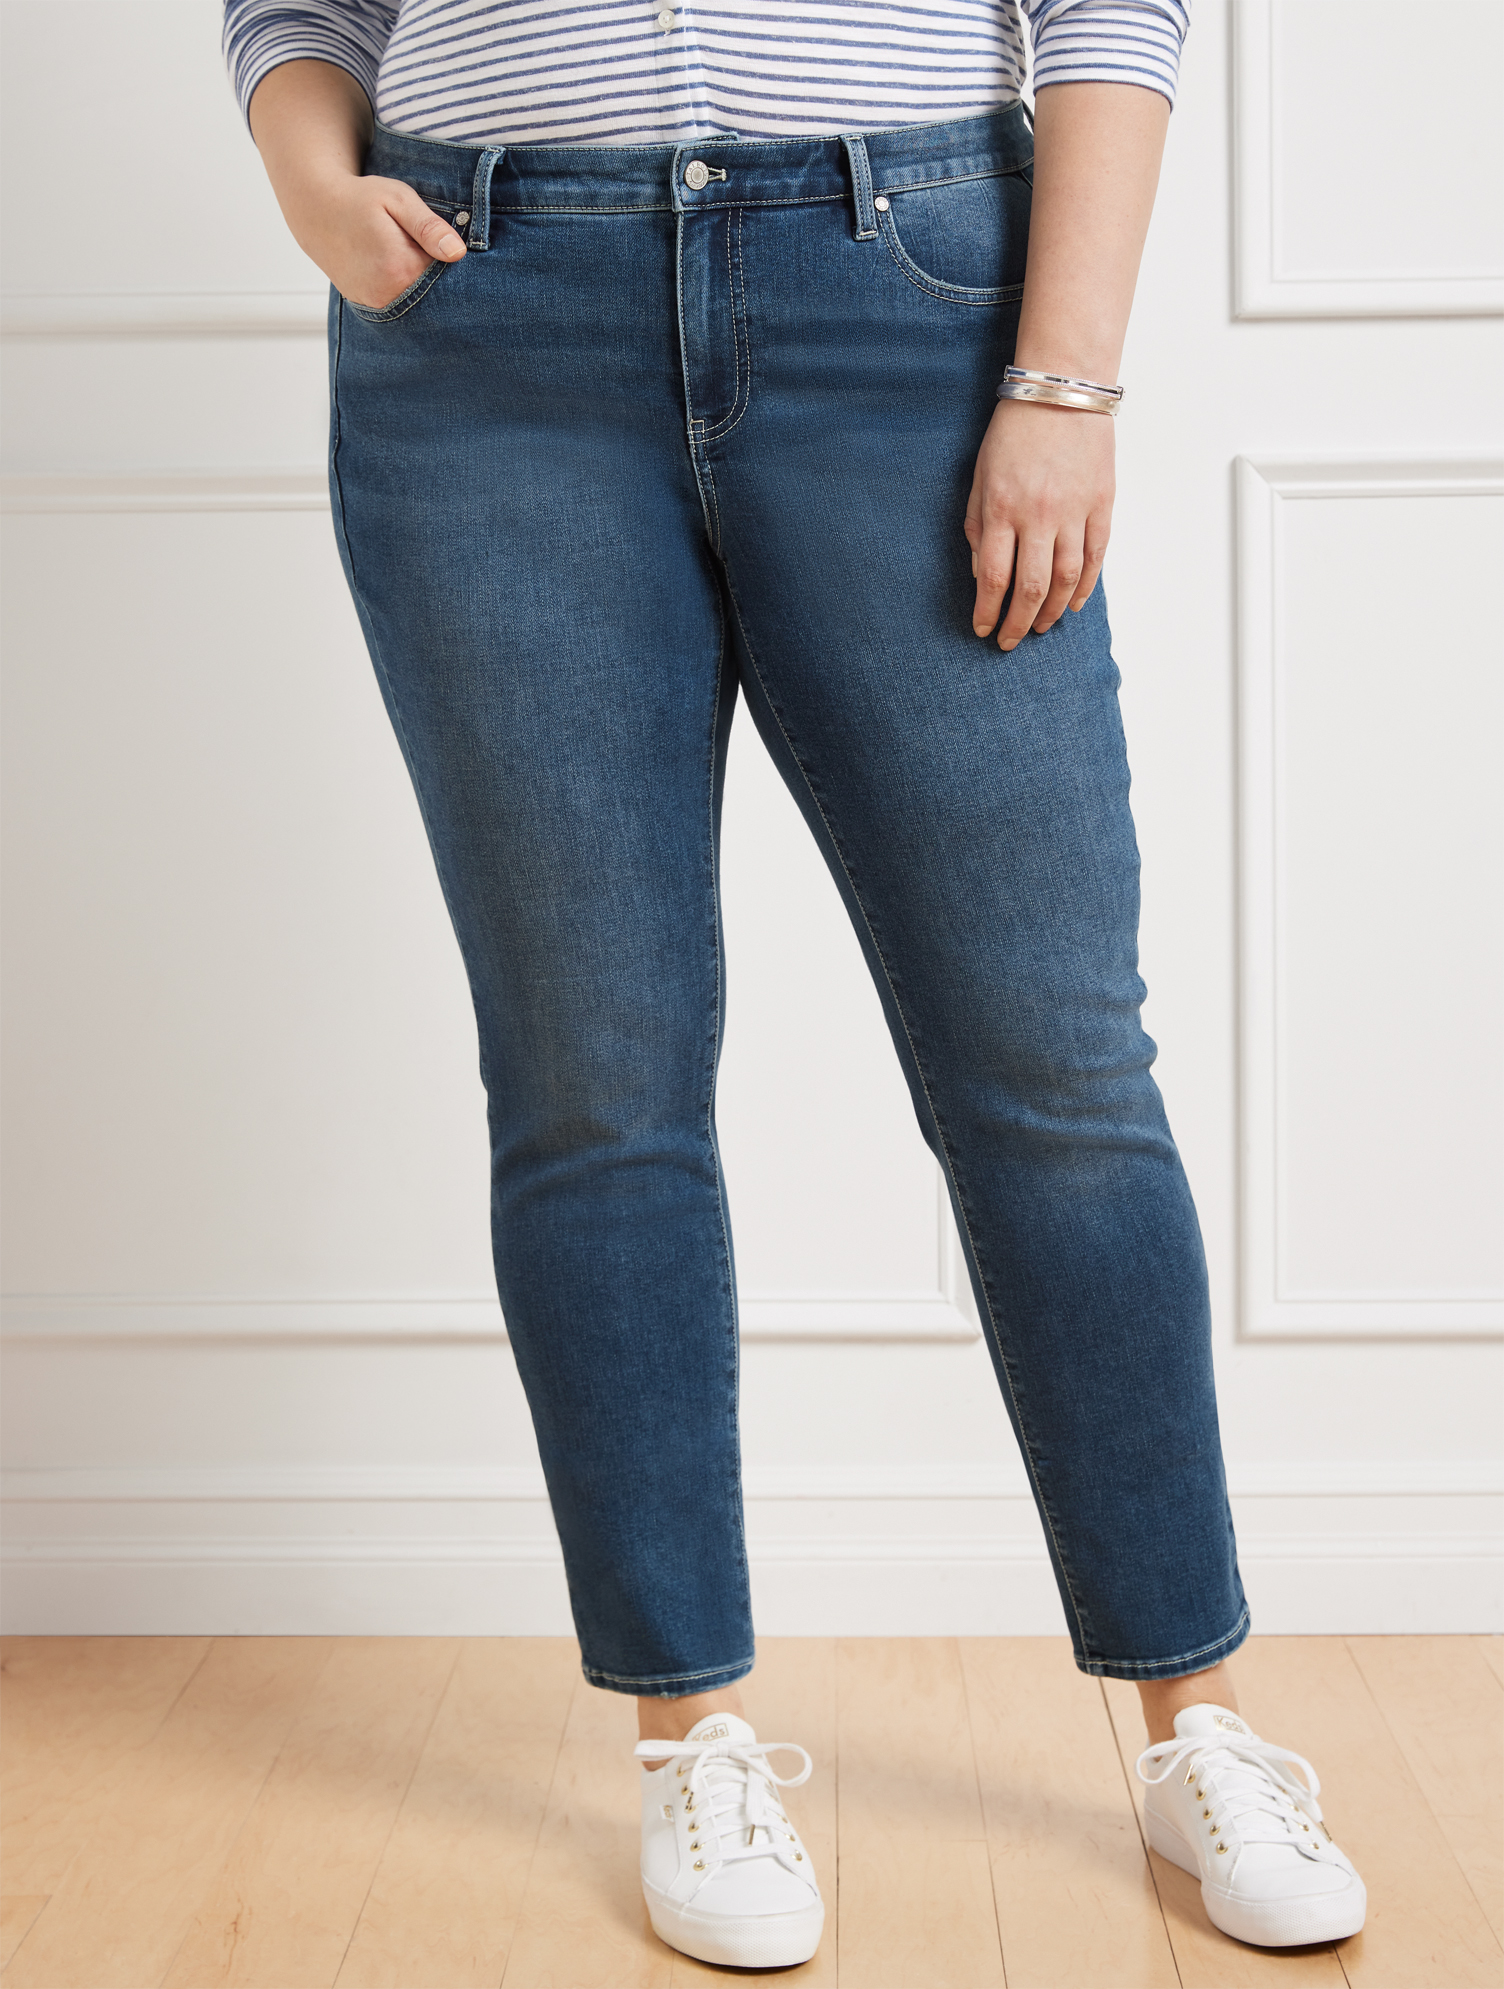 Talbots Plus Size - Plus Exclusive Slim Ankle Jeans - Palma Wash - Curvy Fit - 24